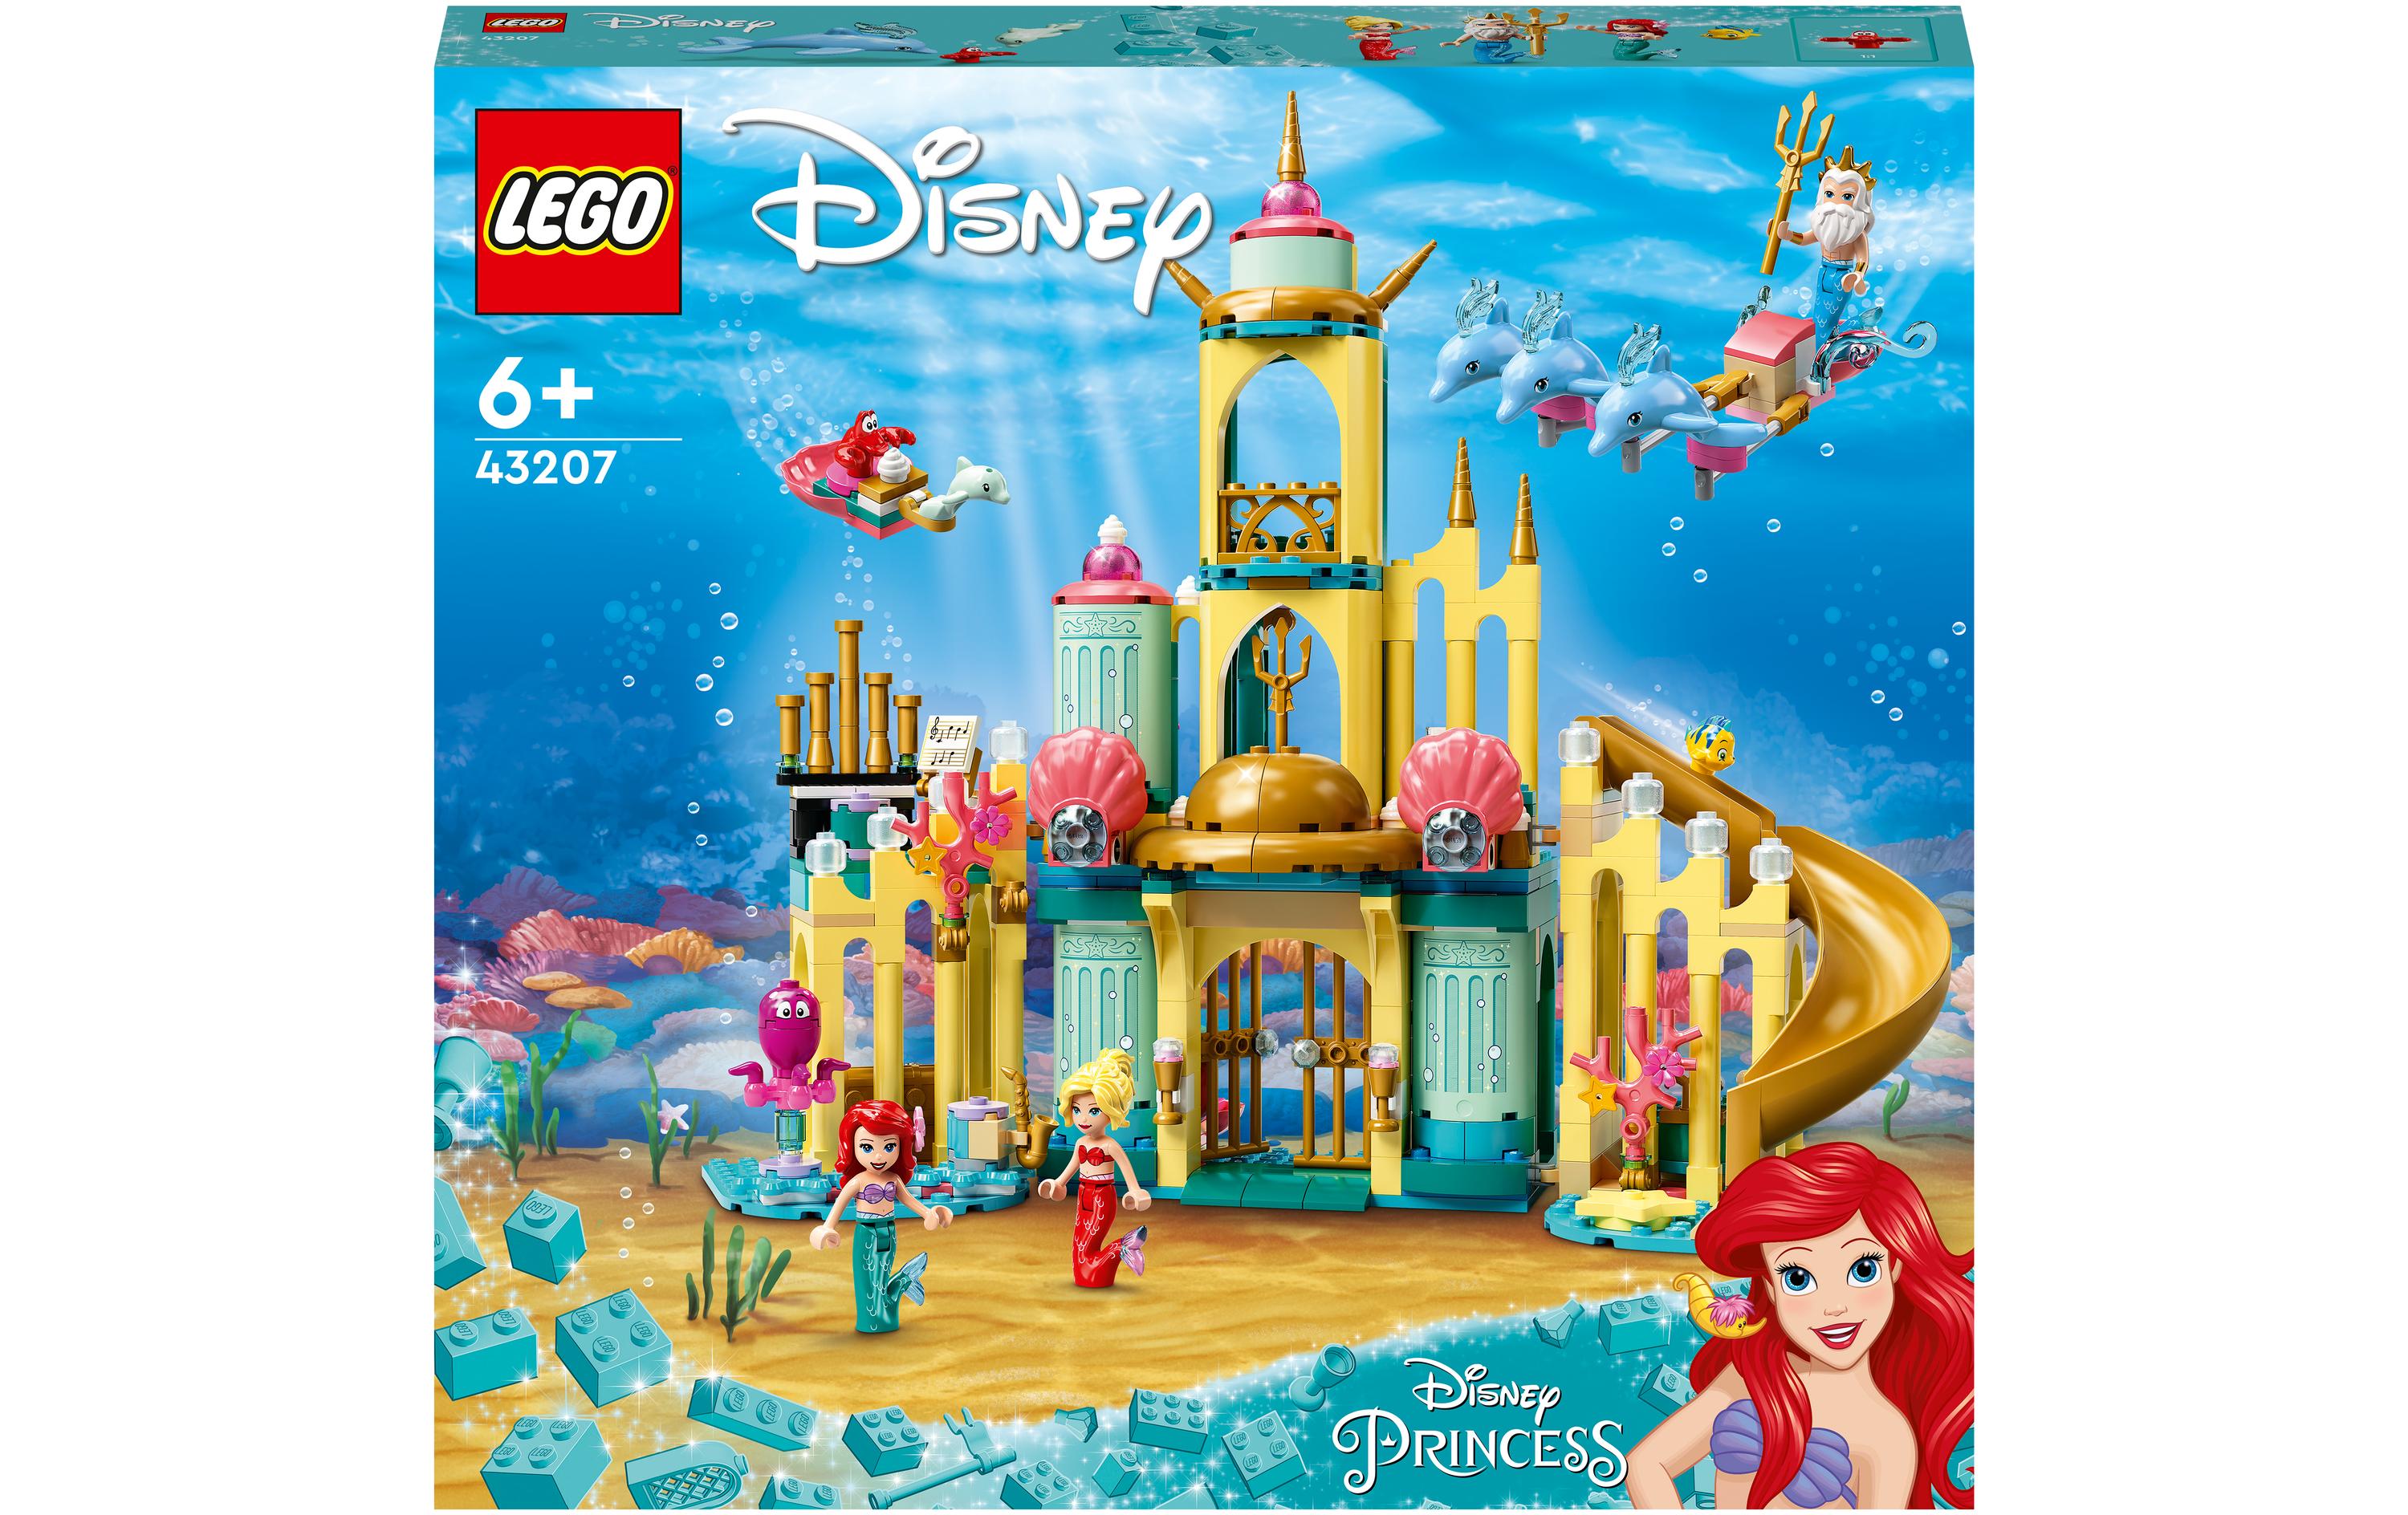 LEGO® Disney Princess Arielles Unterwasserschloss 43207 - im GOLDSTIEN.SHOP verfügbar mit Gratisversand ab Schweizer Lager! (5702017154343)